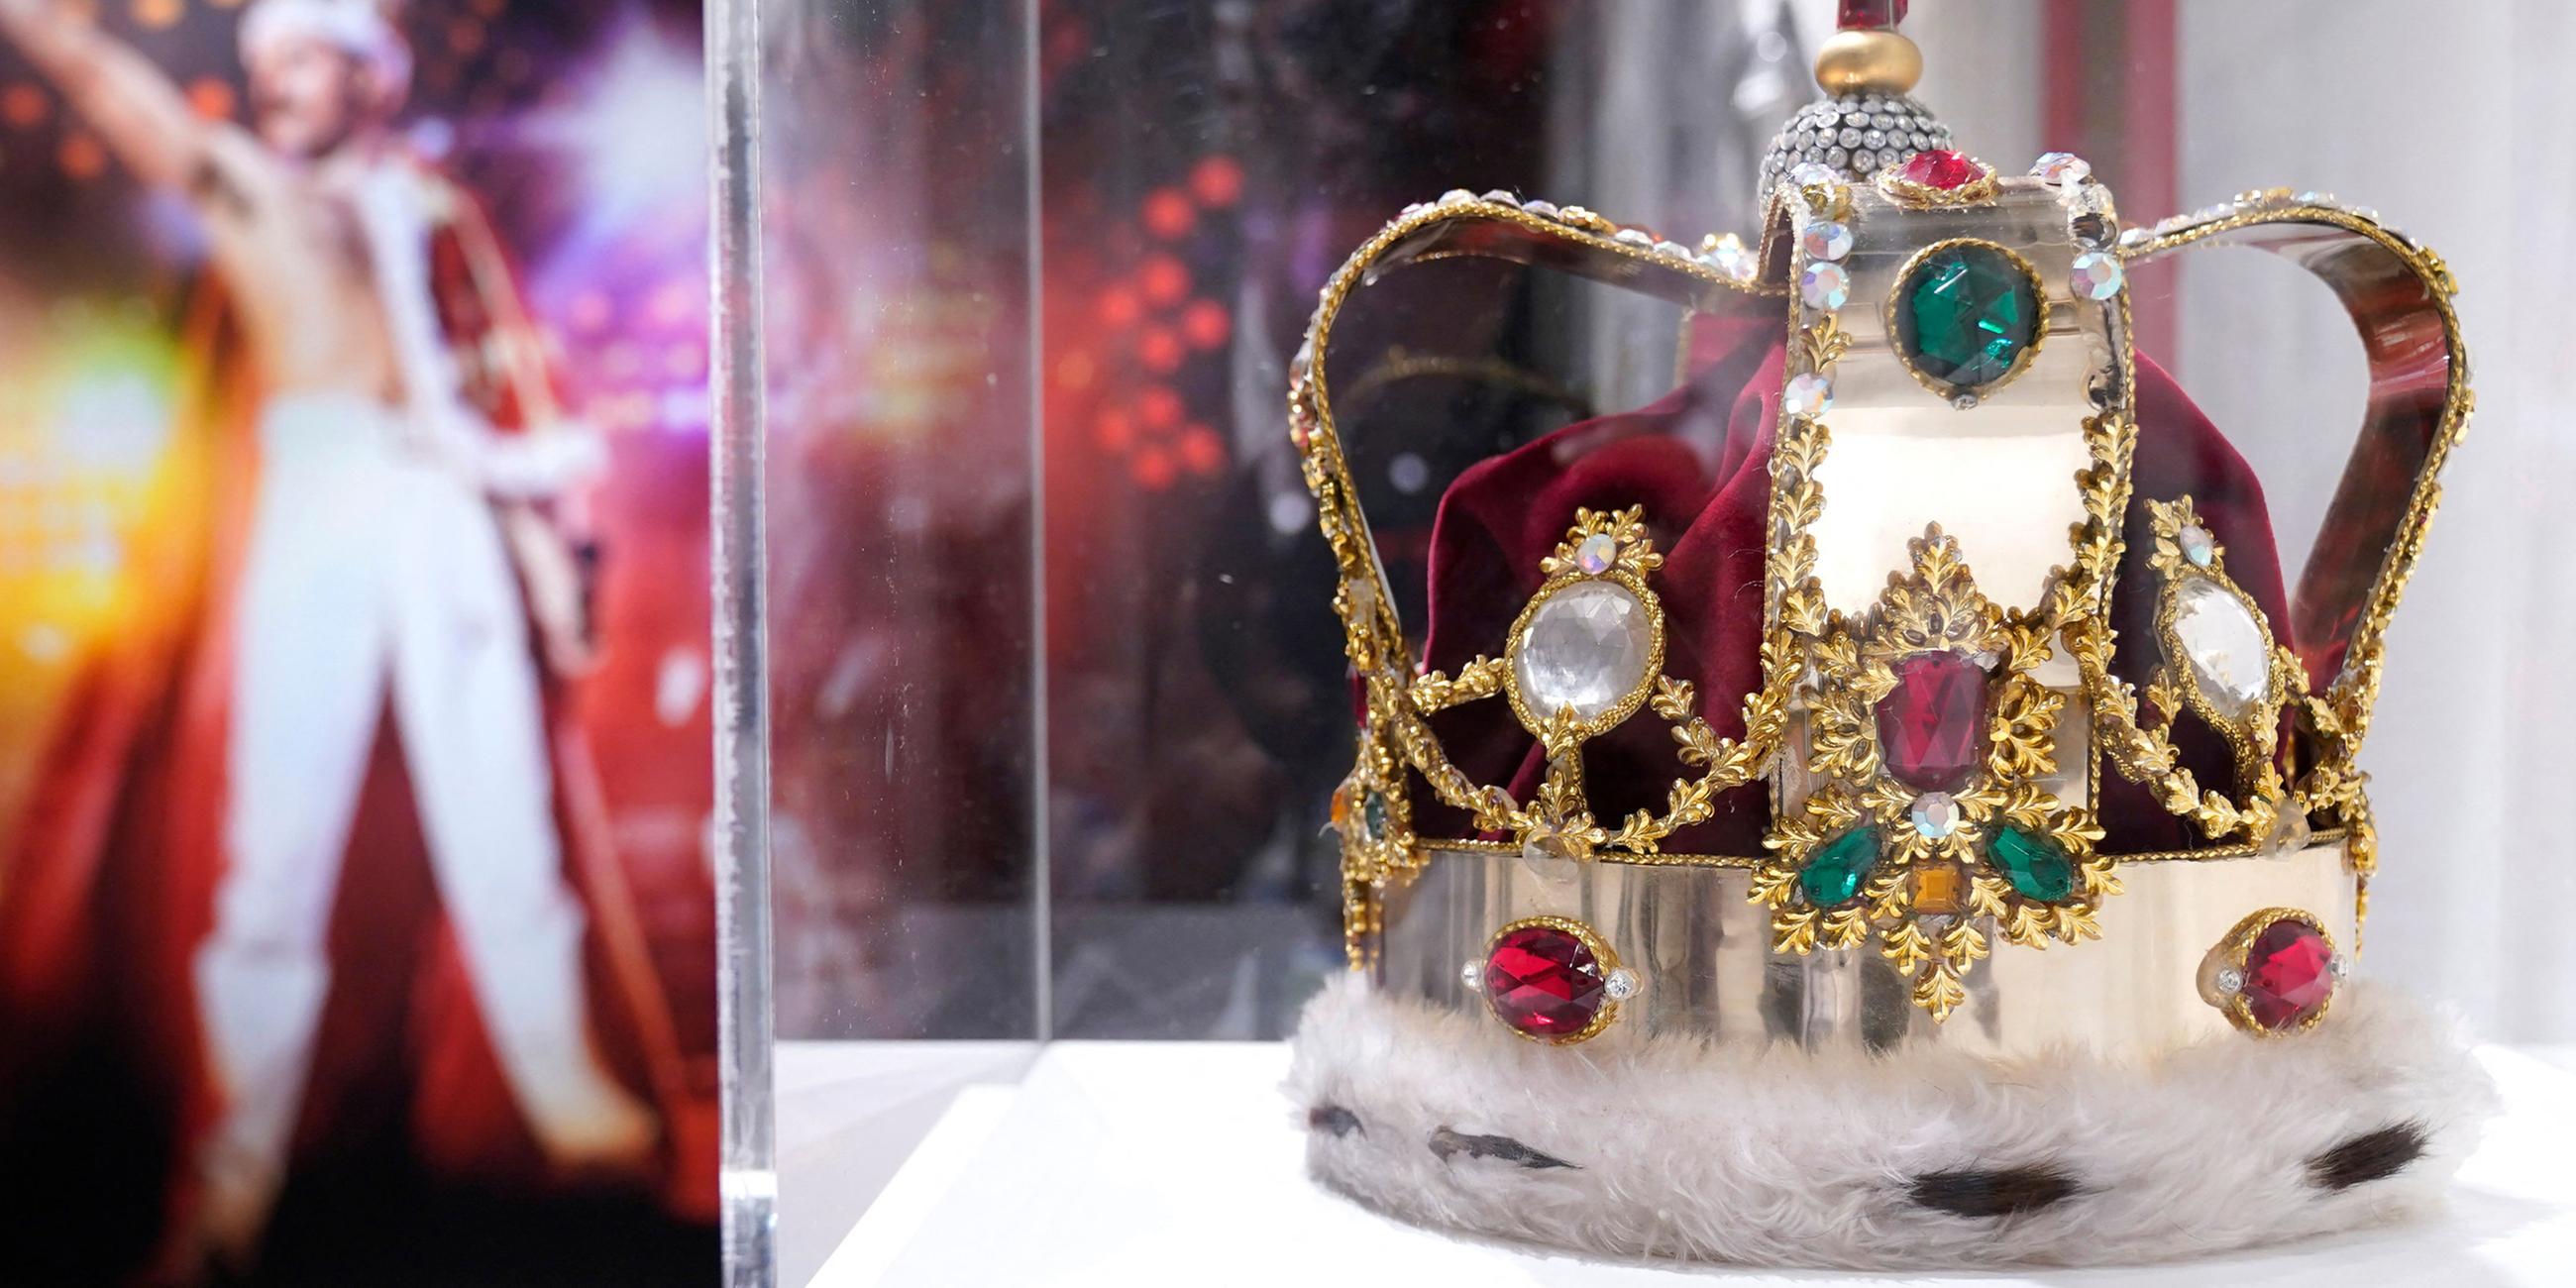 Die charakteristische Krone des britischen Singer-Songwriters Freddie Mercury wird während der Medienvorschau gezeigt.